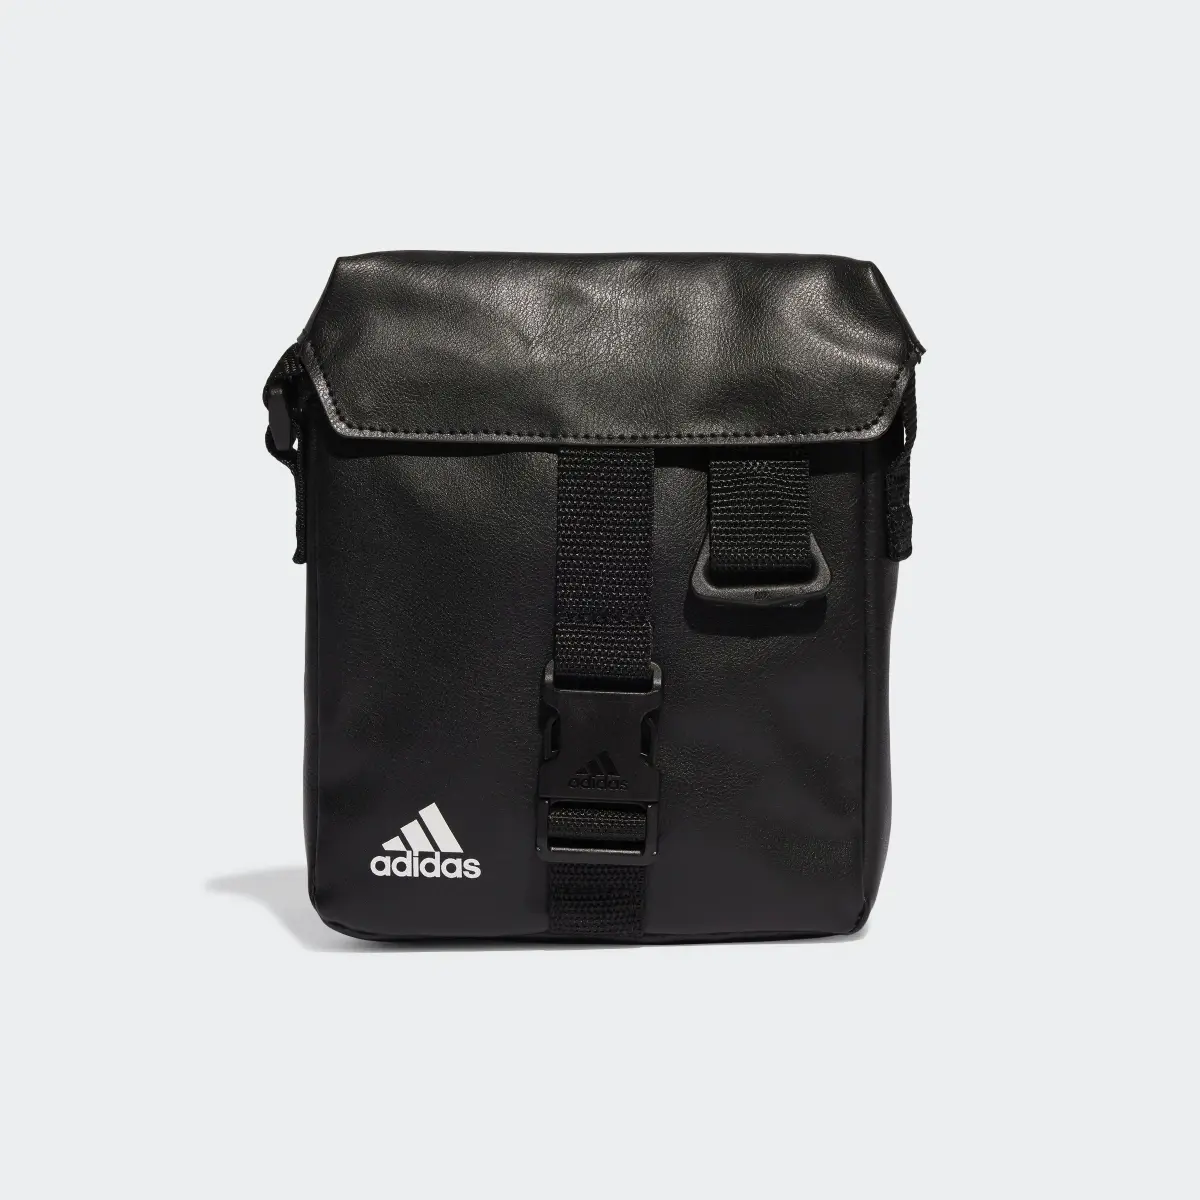 Adidas Essentials Small Bag. 2